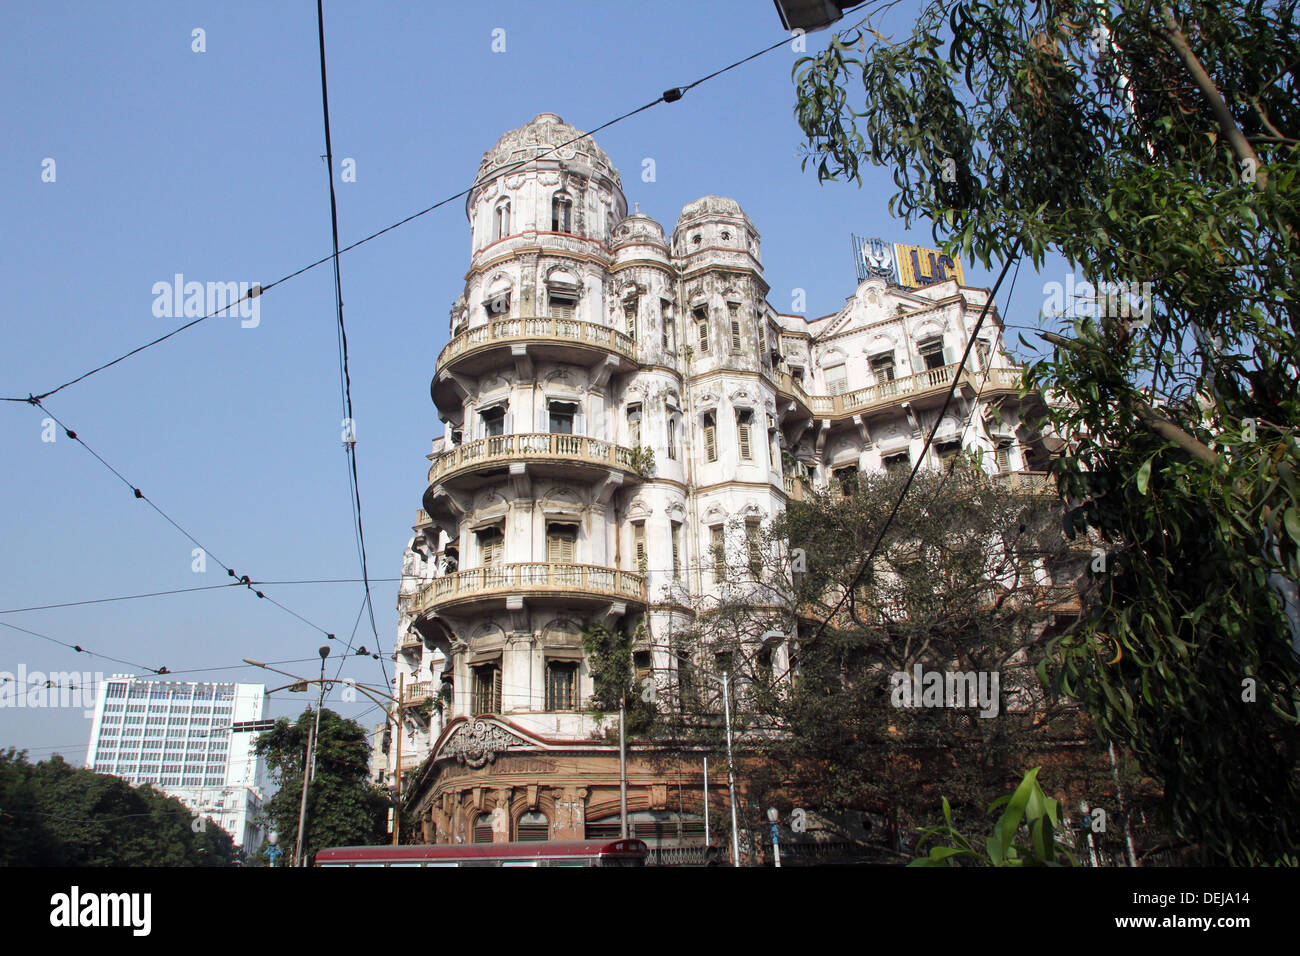 Esplanade mansions construite pendant l'ère coloniale Britannique lorsque Kolkata était la capitale de l'Inde britannique Banque D'Images